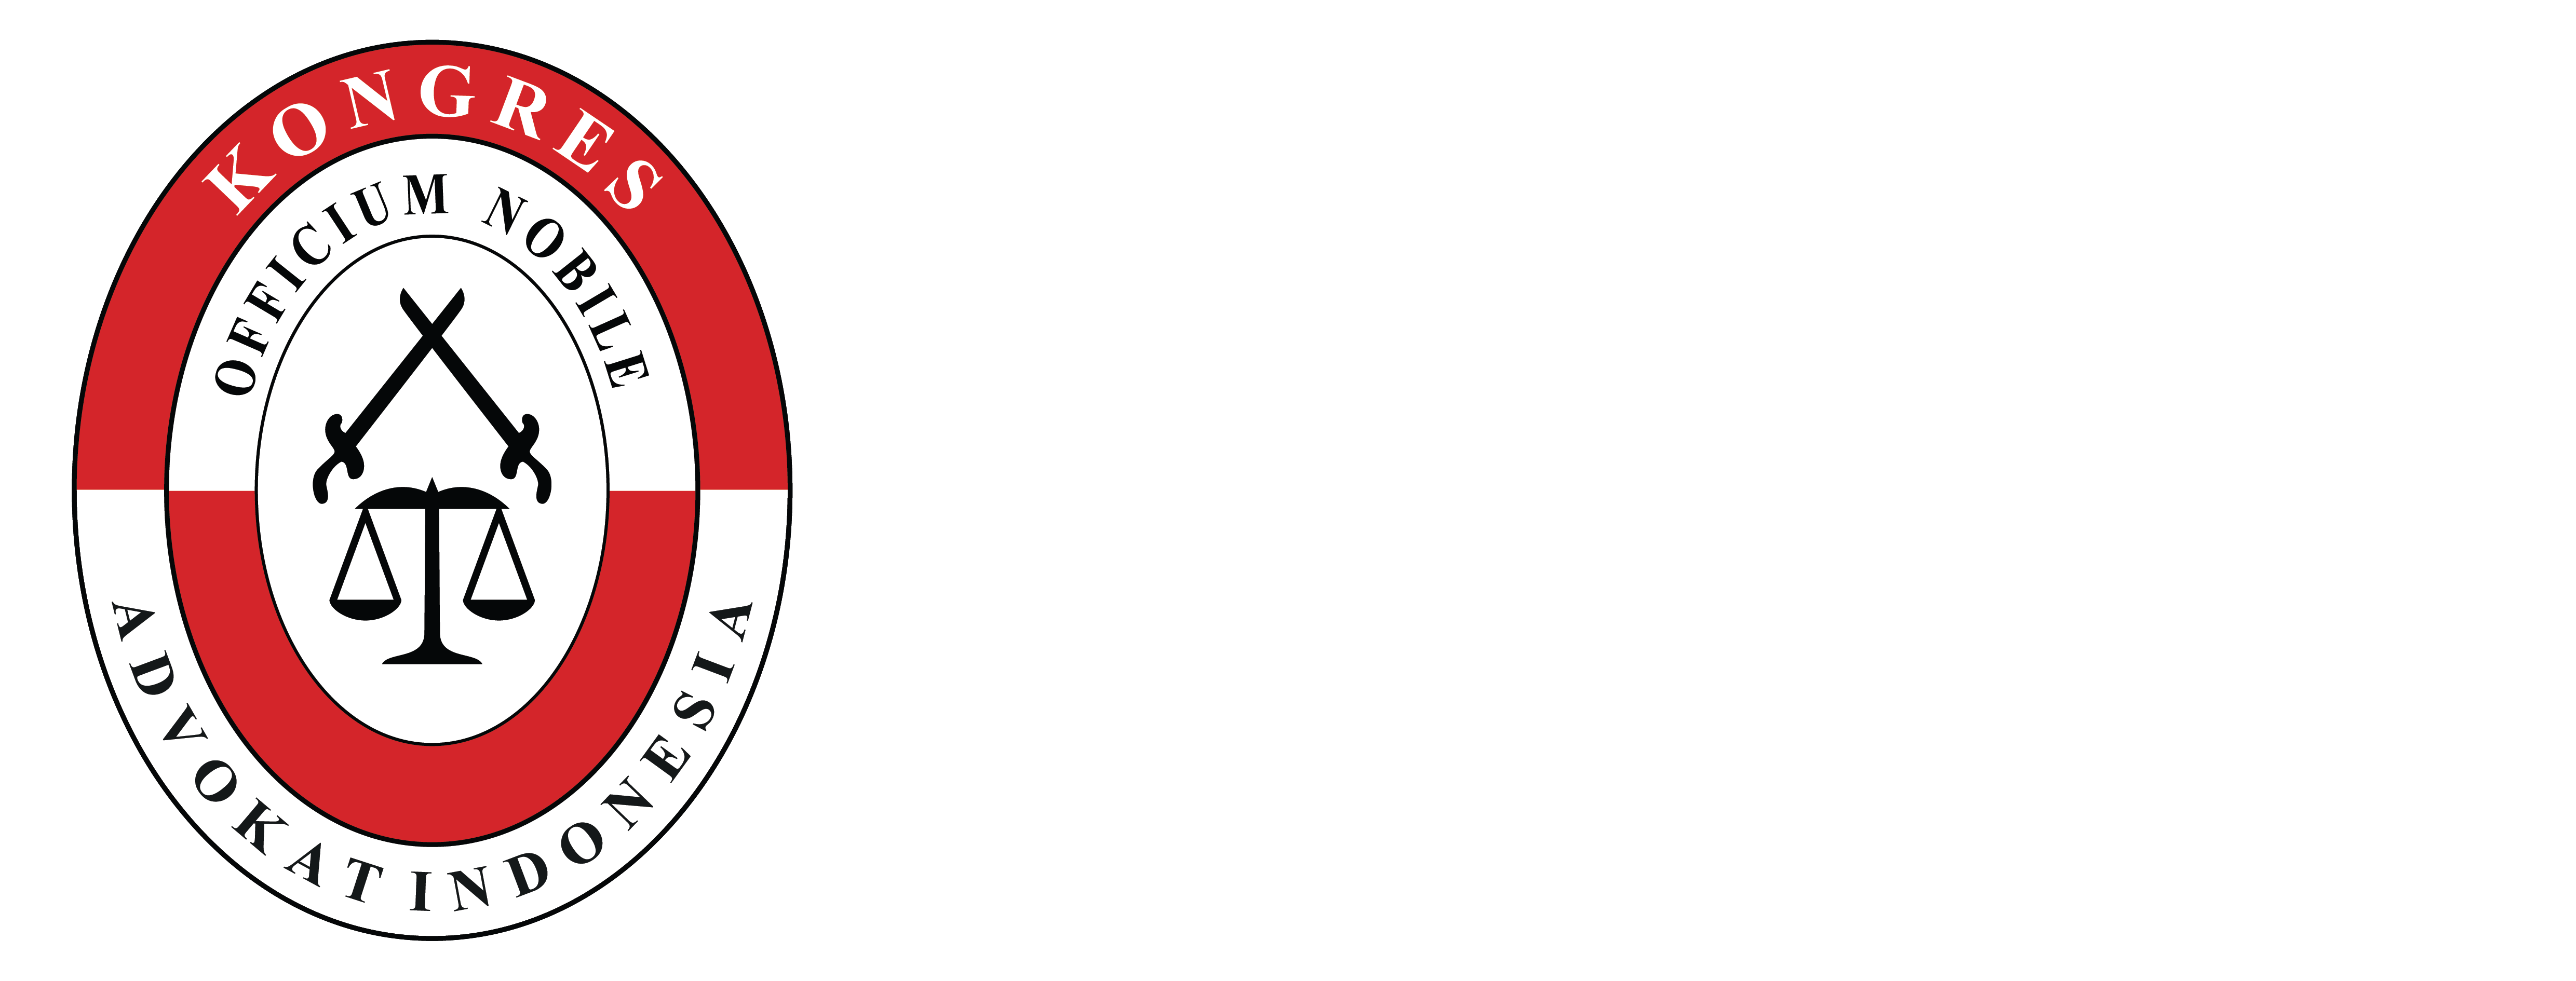 Logo KAI Logo KAI - Kongres Advokat Indonesia